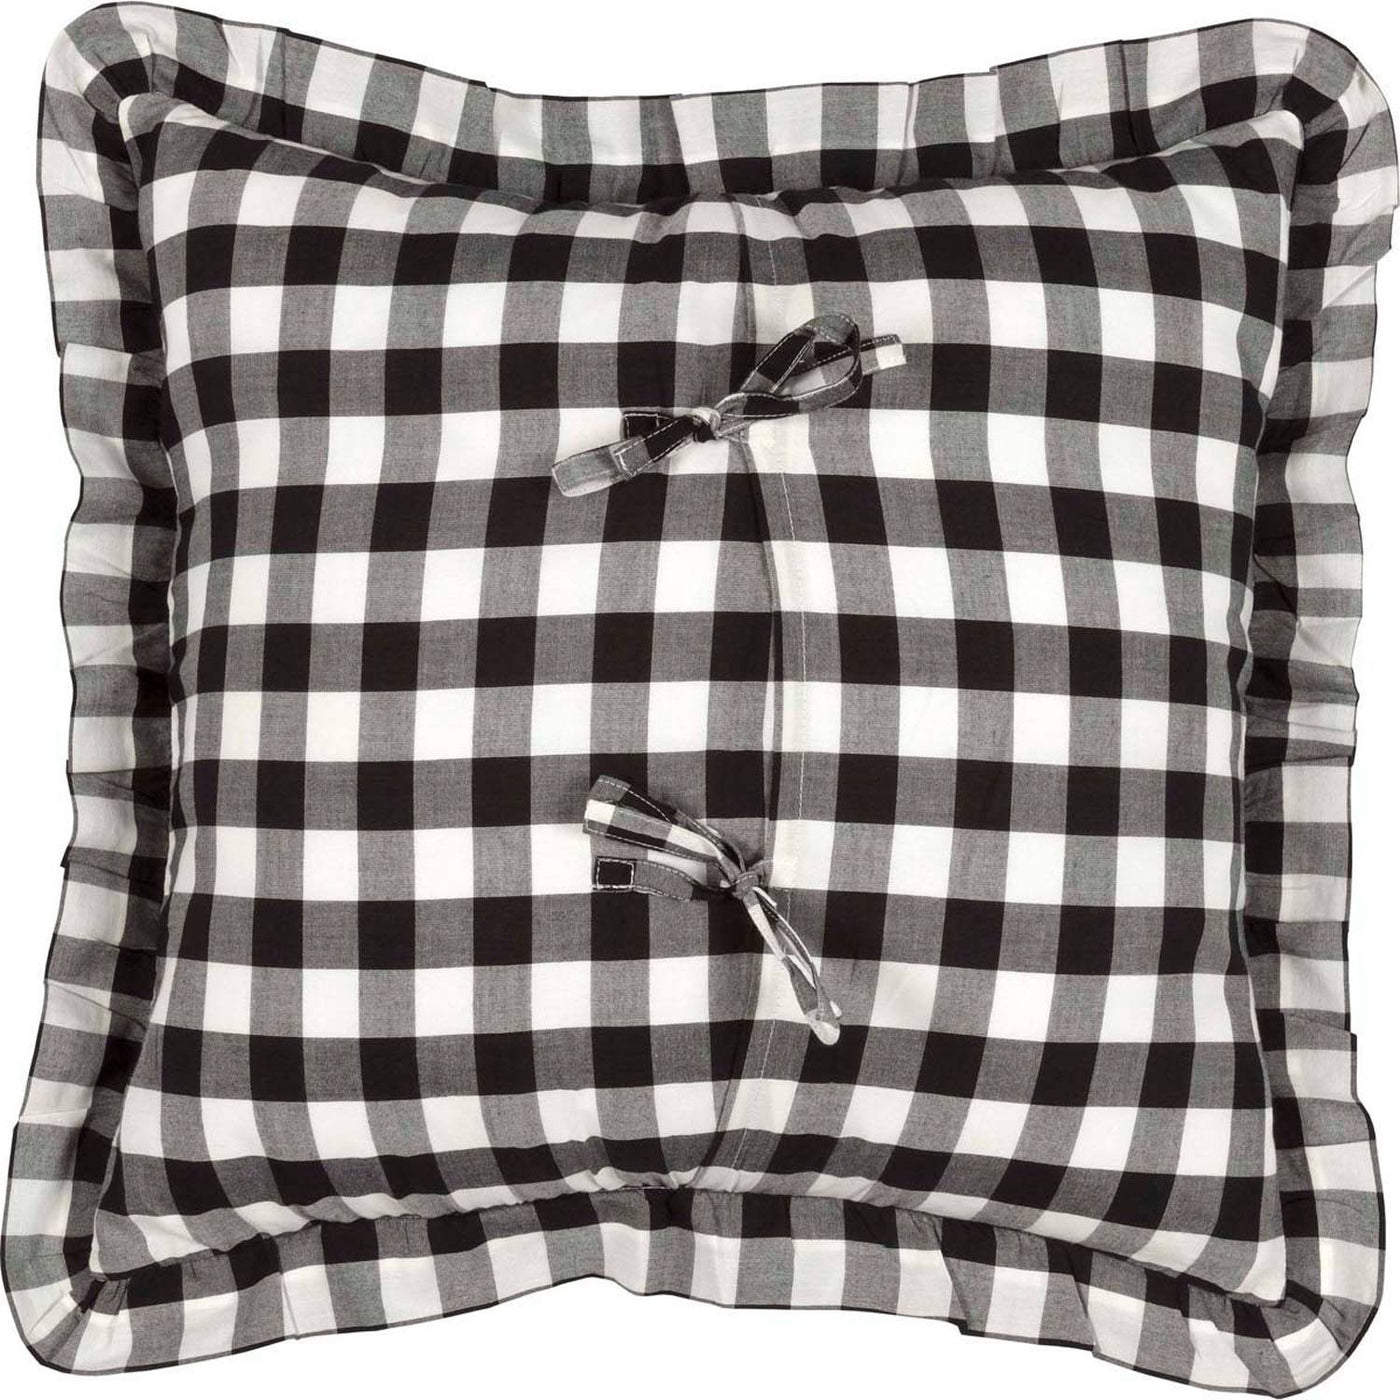 Kuna 18 x 18 Ruffled Pillow - Black/White